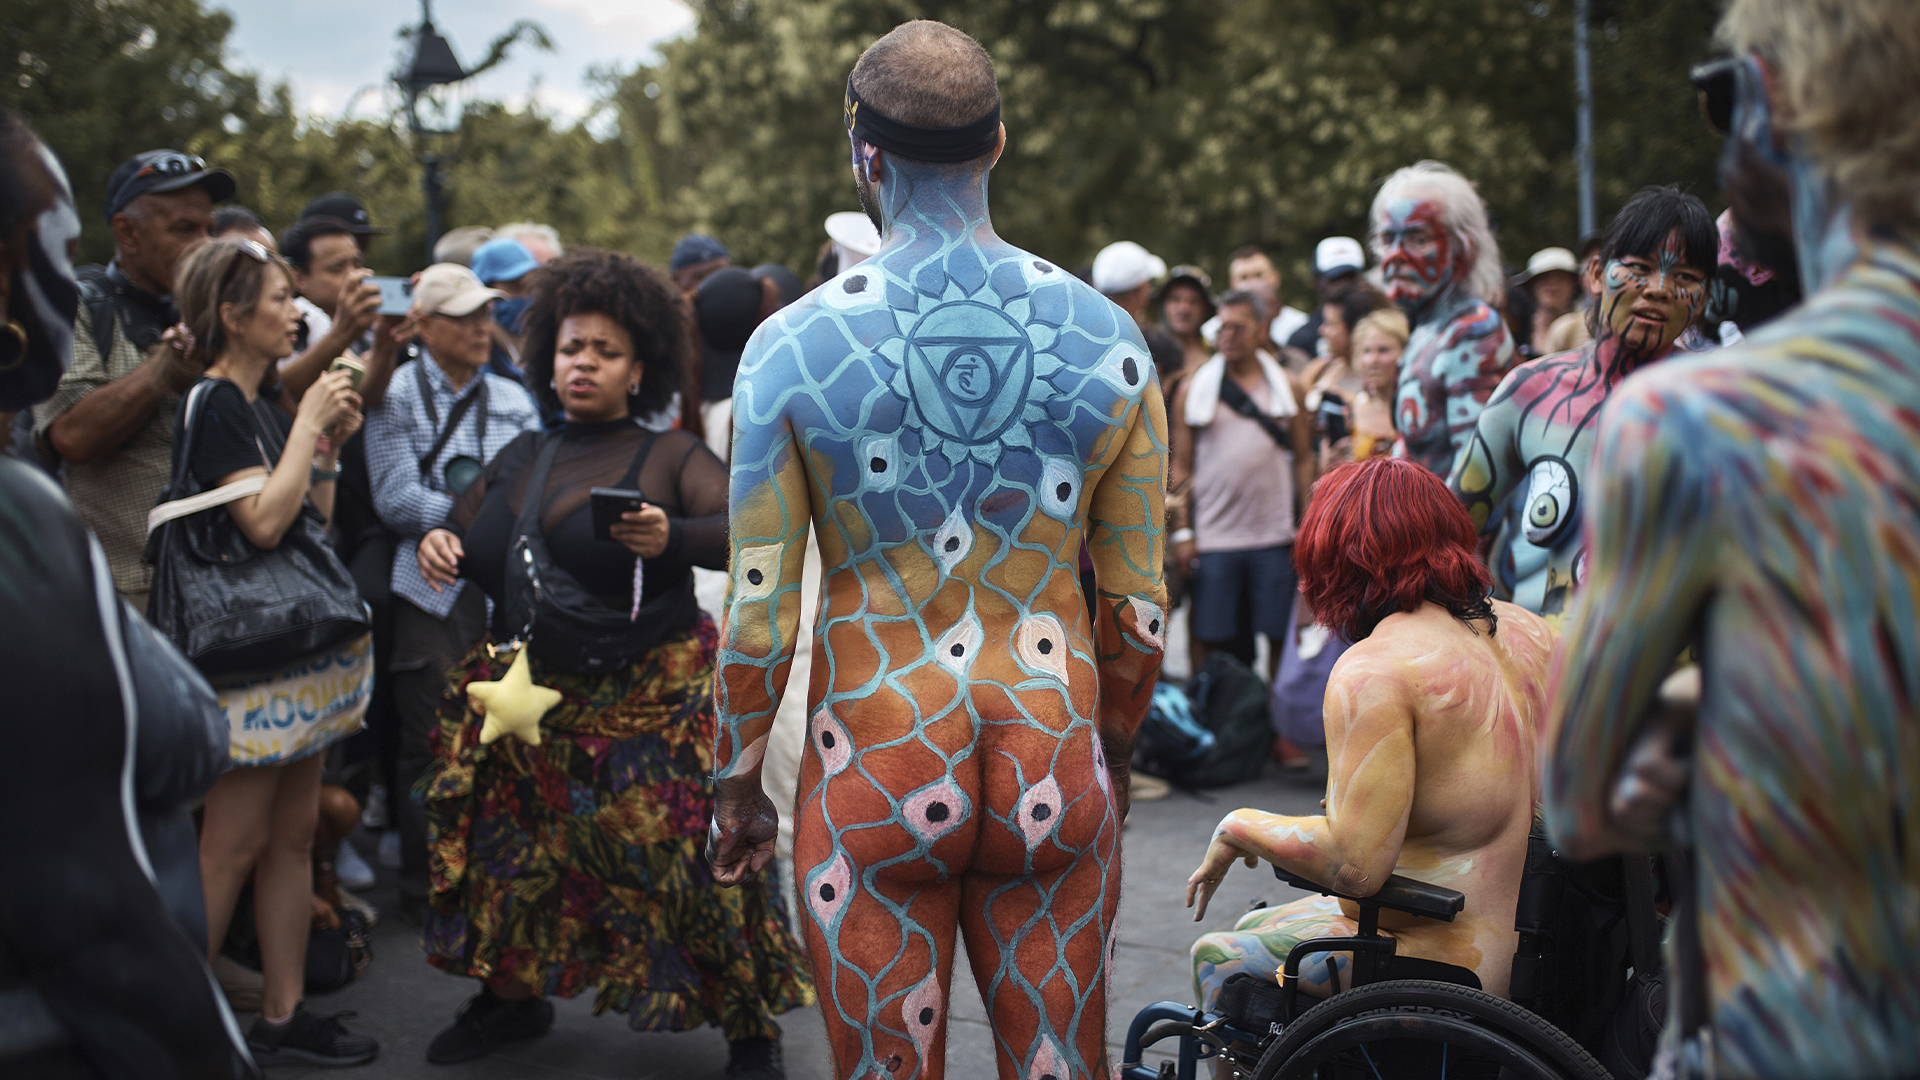 Le «Bodypainting Day» de dimanche sera la dernière édition après plus d'une décennie d'artistes transformant des corps nus en œuvres d'art.